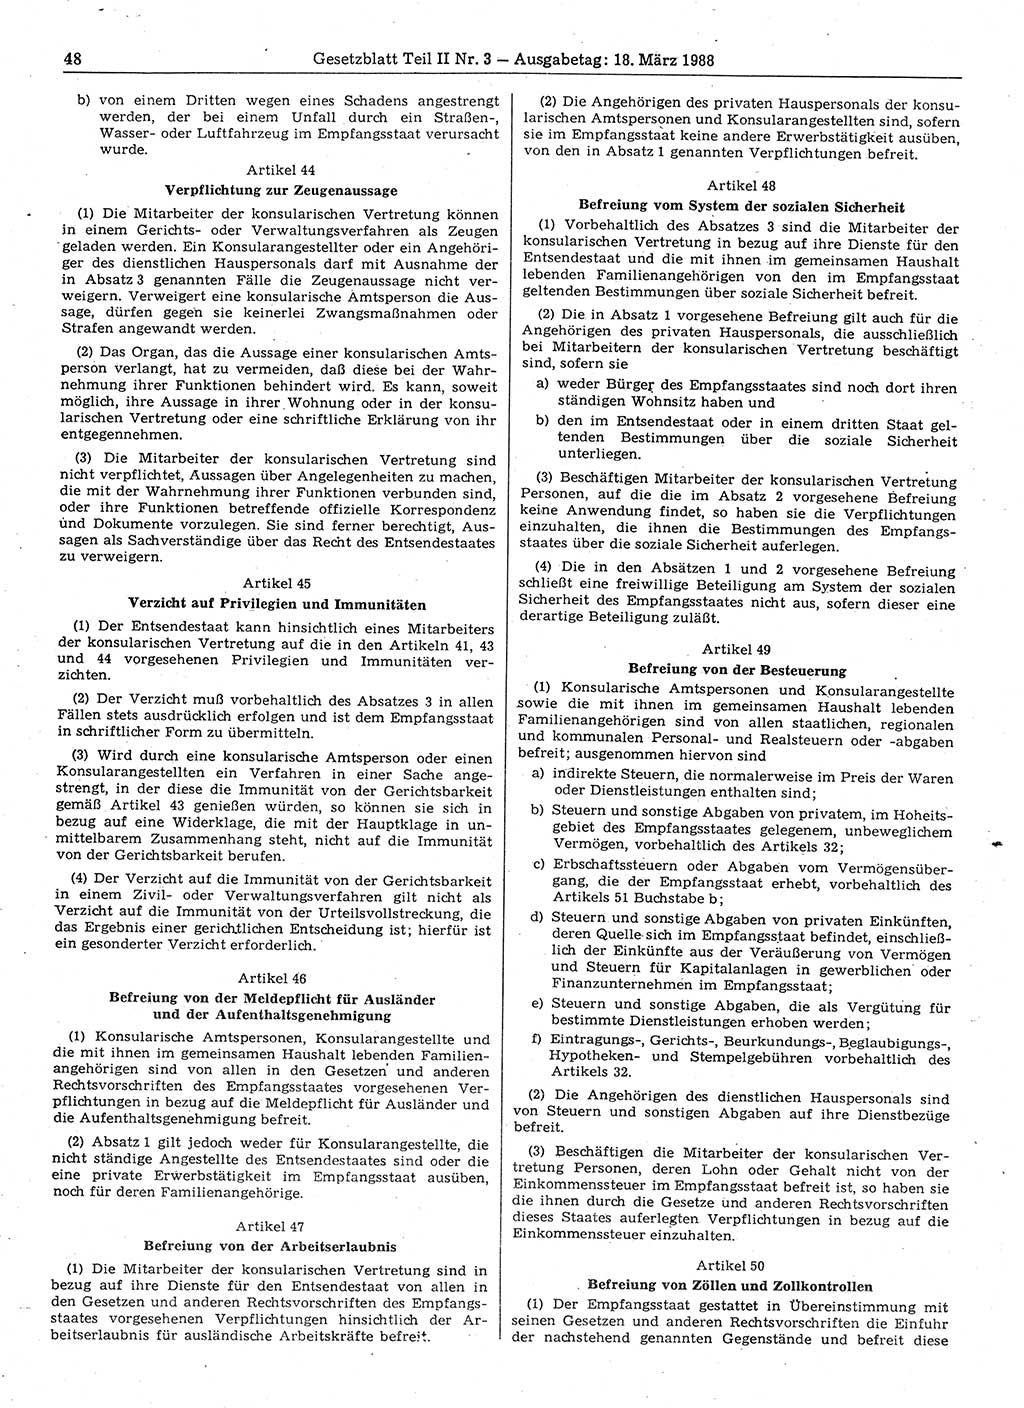 Gesetzblatt (GBl.) der Deutschen Demokratischen Republik (DDR) Teil ⅠⅠ 1988, Seite 48 (GBl. DDR ⅠⅠ 1988, S. 48)